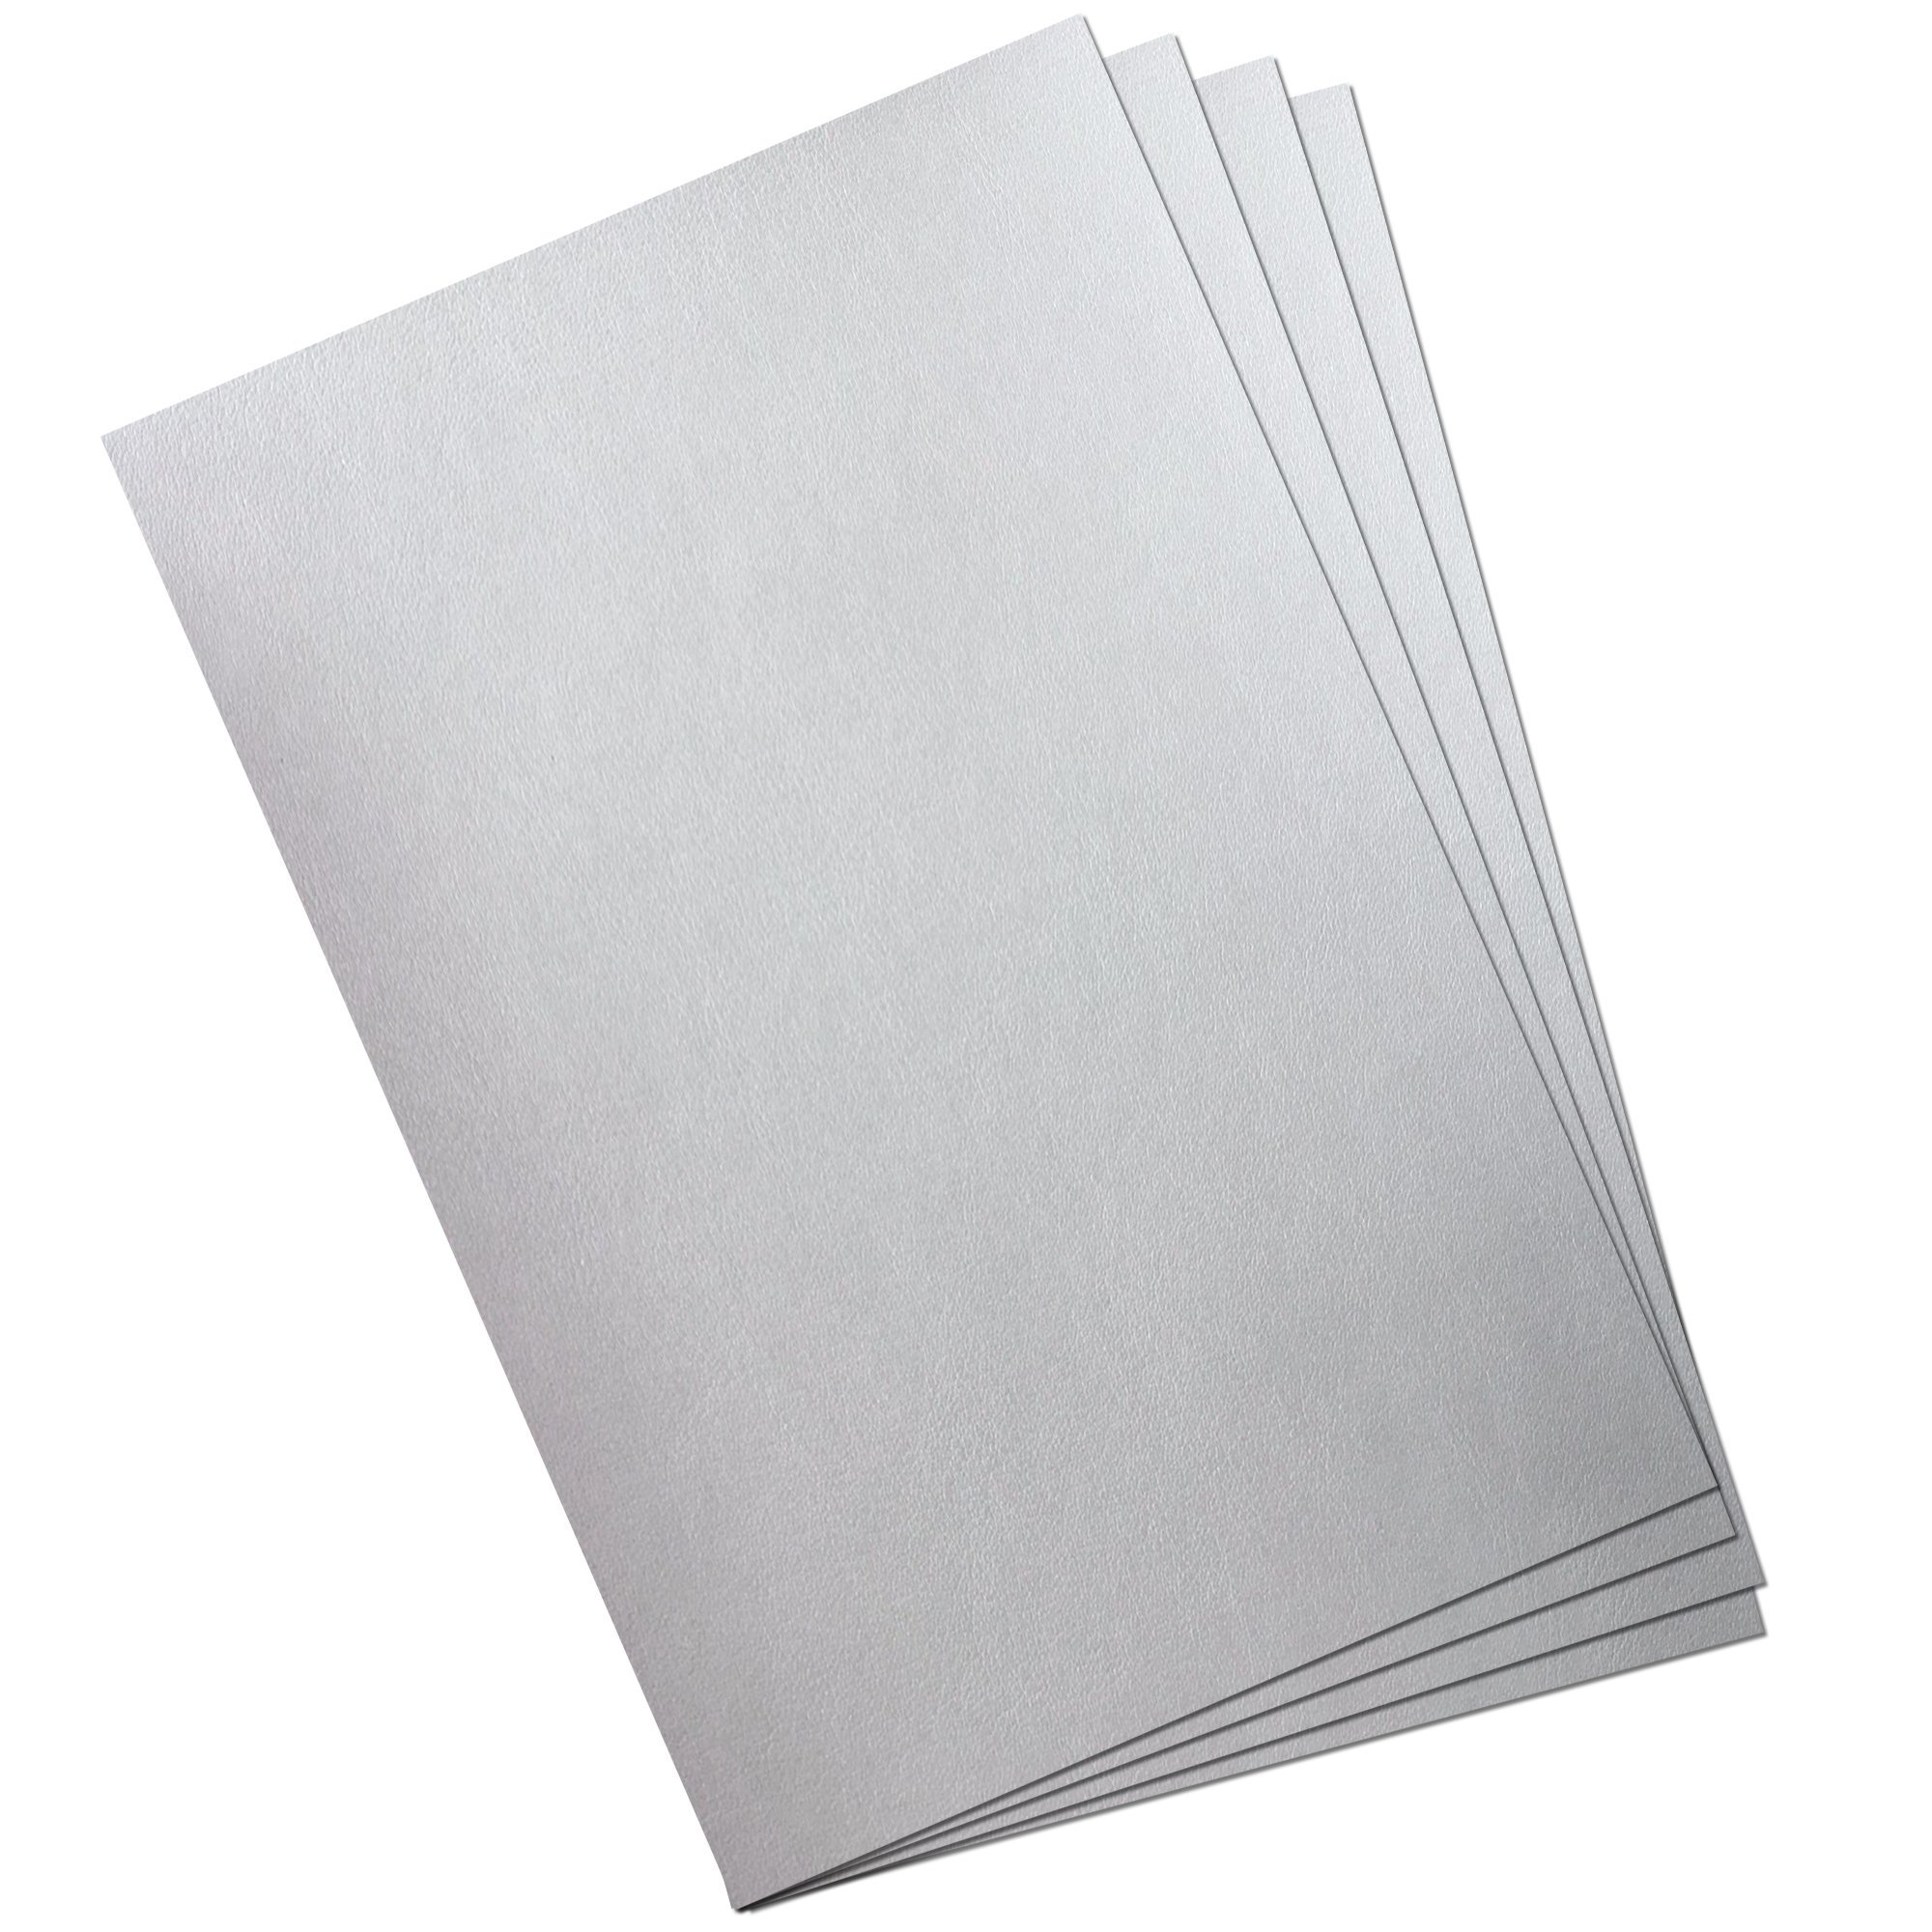 Mopak Resim Kağıdı Dokusuz 110gr 35x50cm 25li Paket